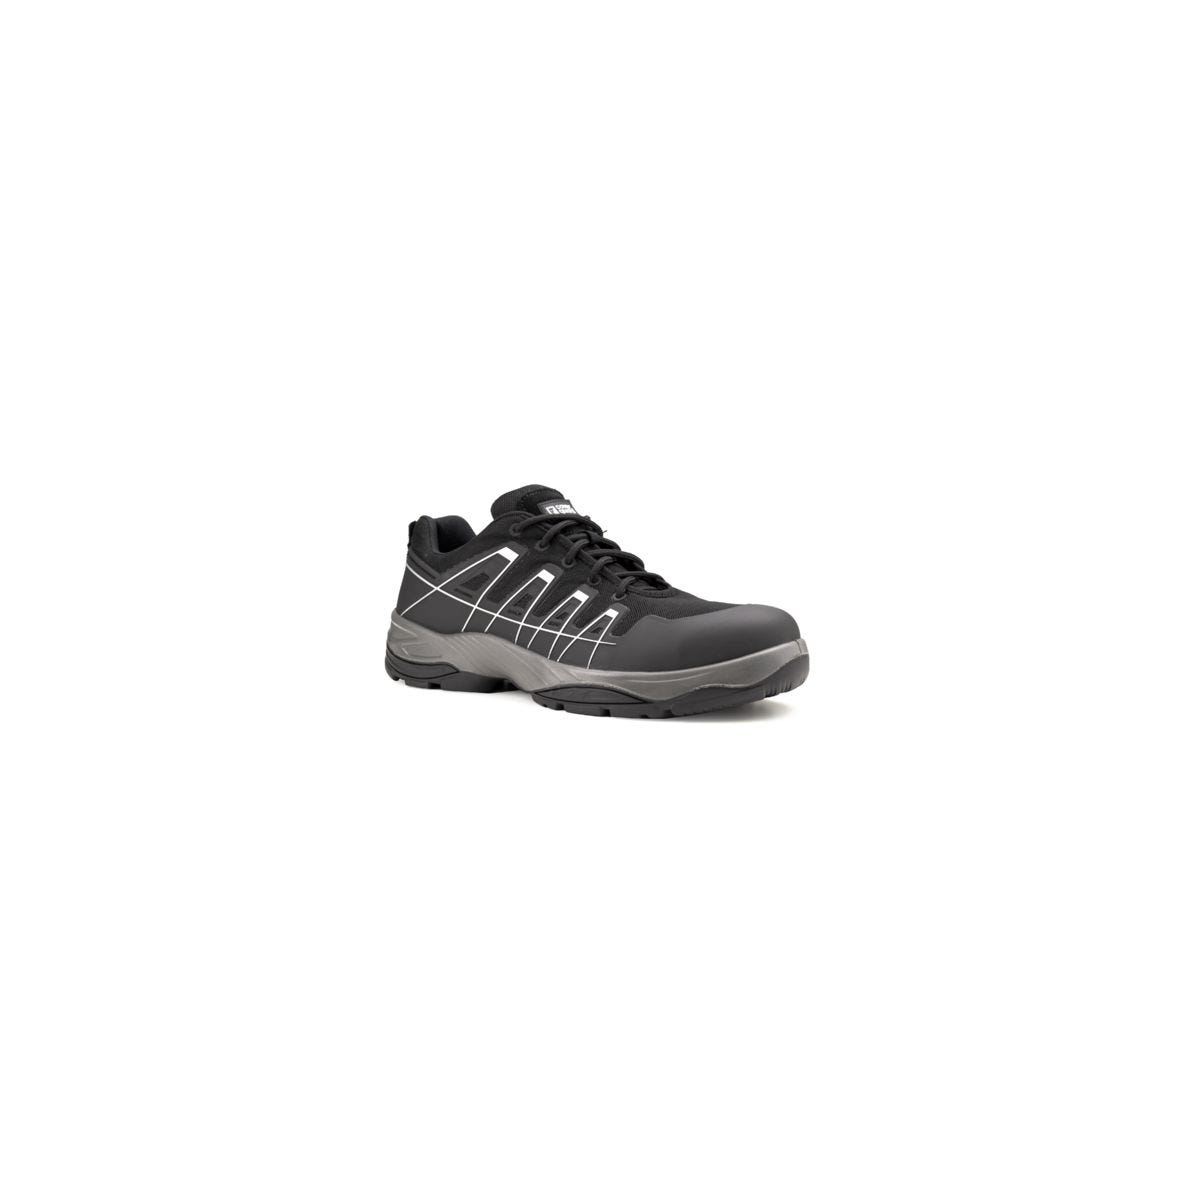 Chaussures de sécurité SCHORL S3 Basse Noir - COVERGUARD - Taille 46 0